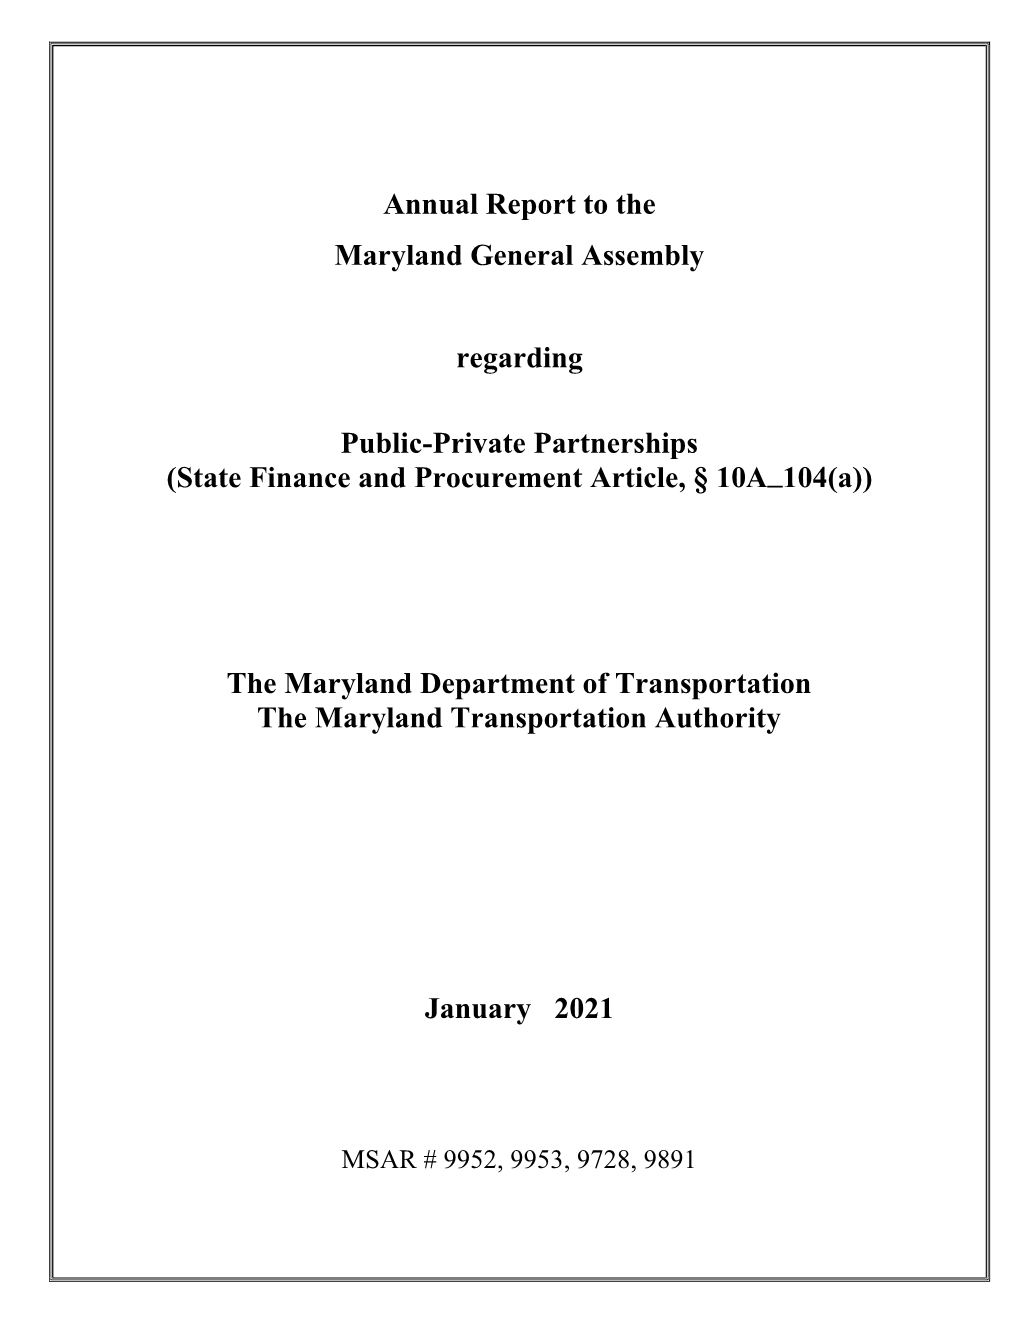 MDOT P3 Annual Report